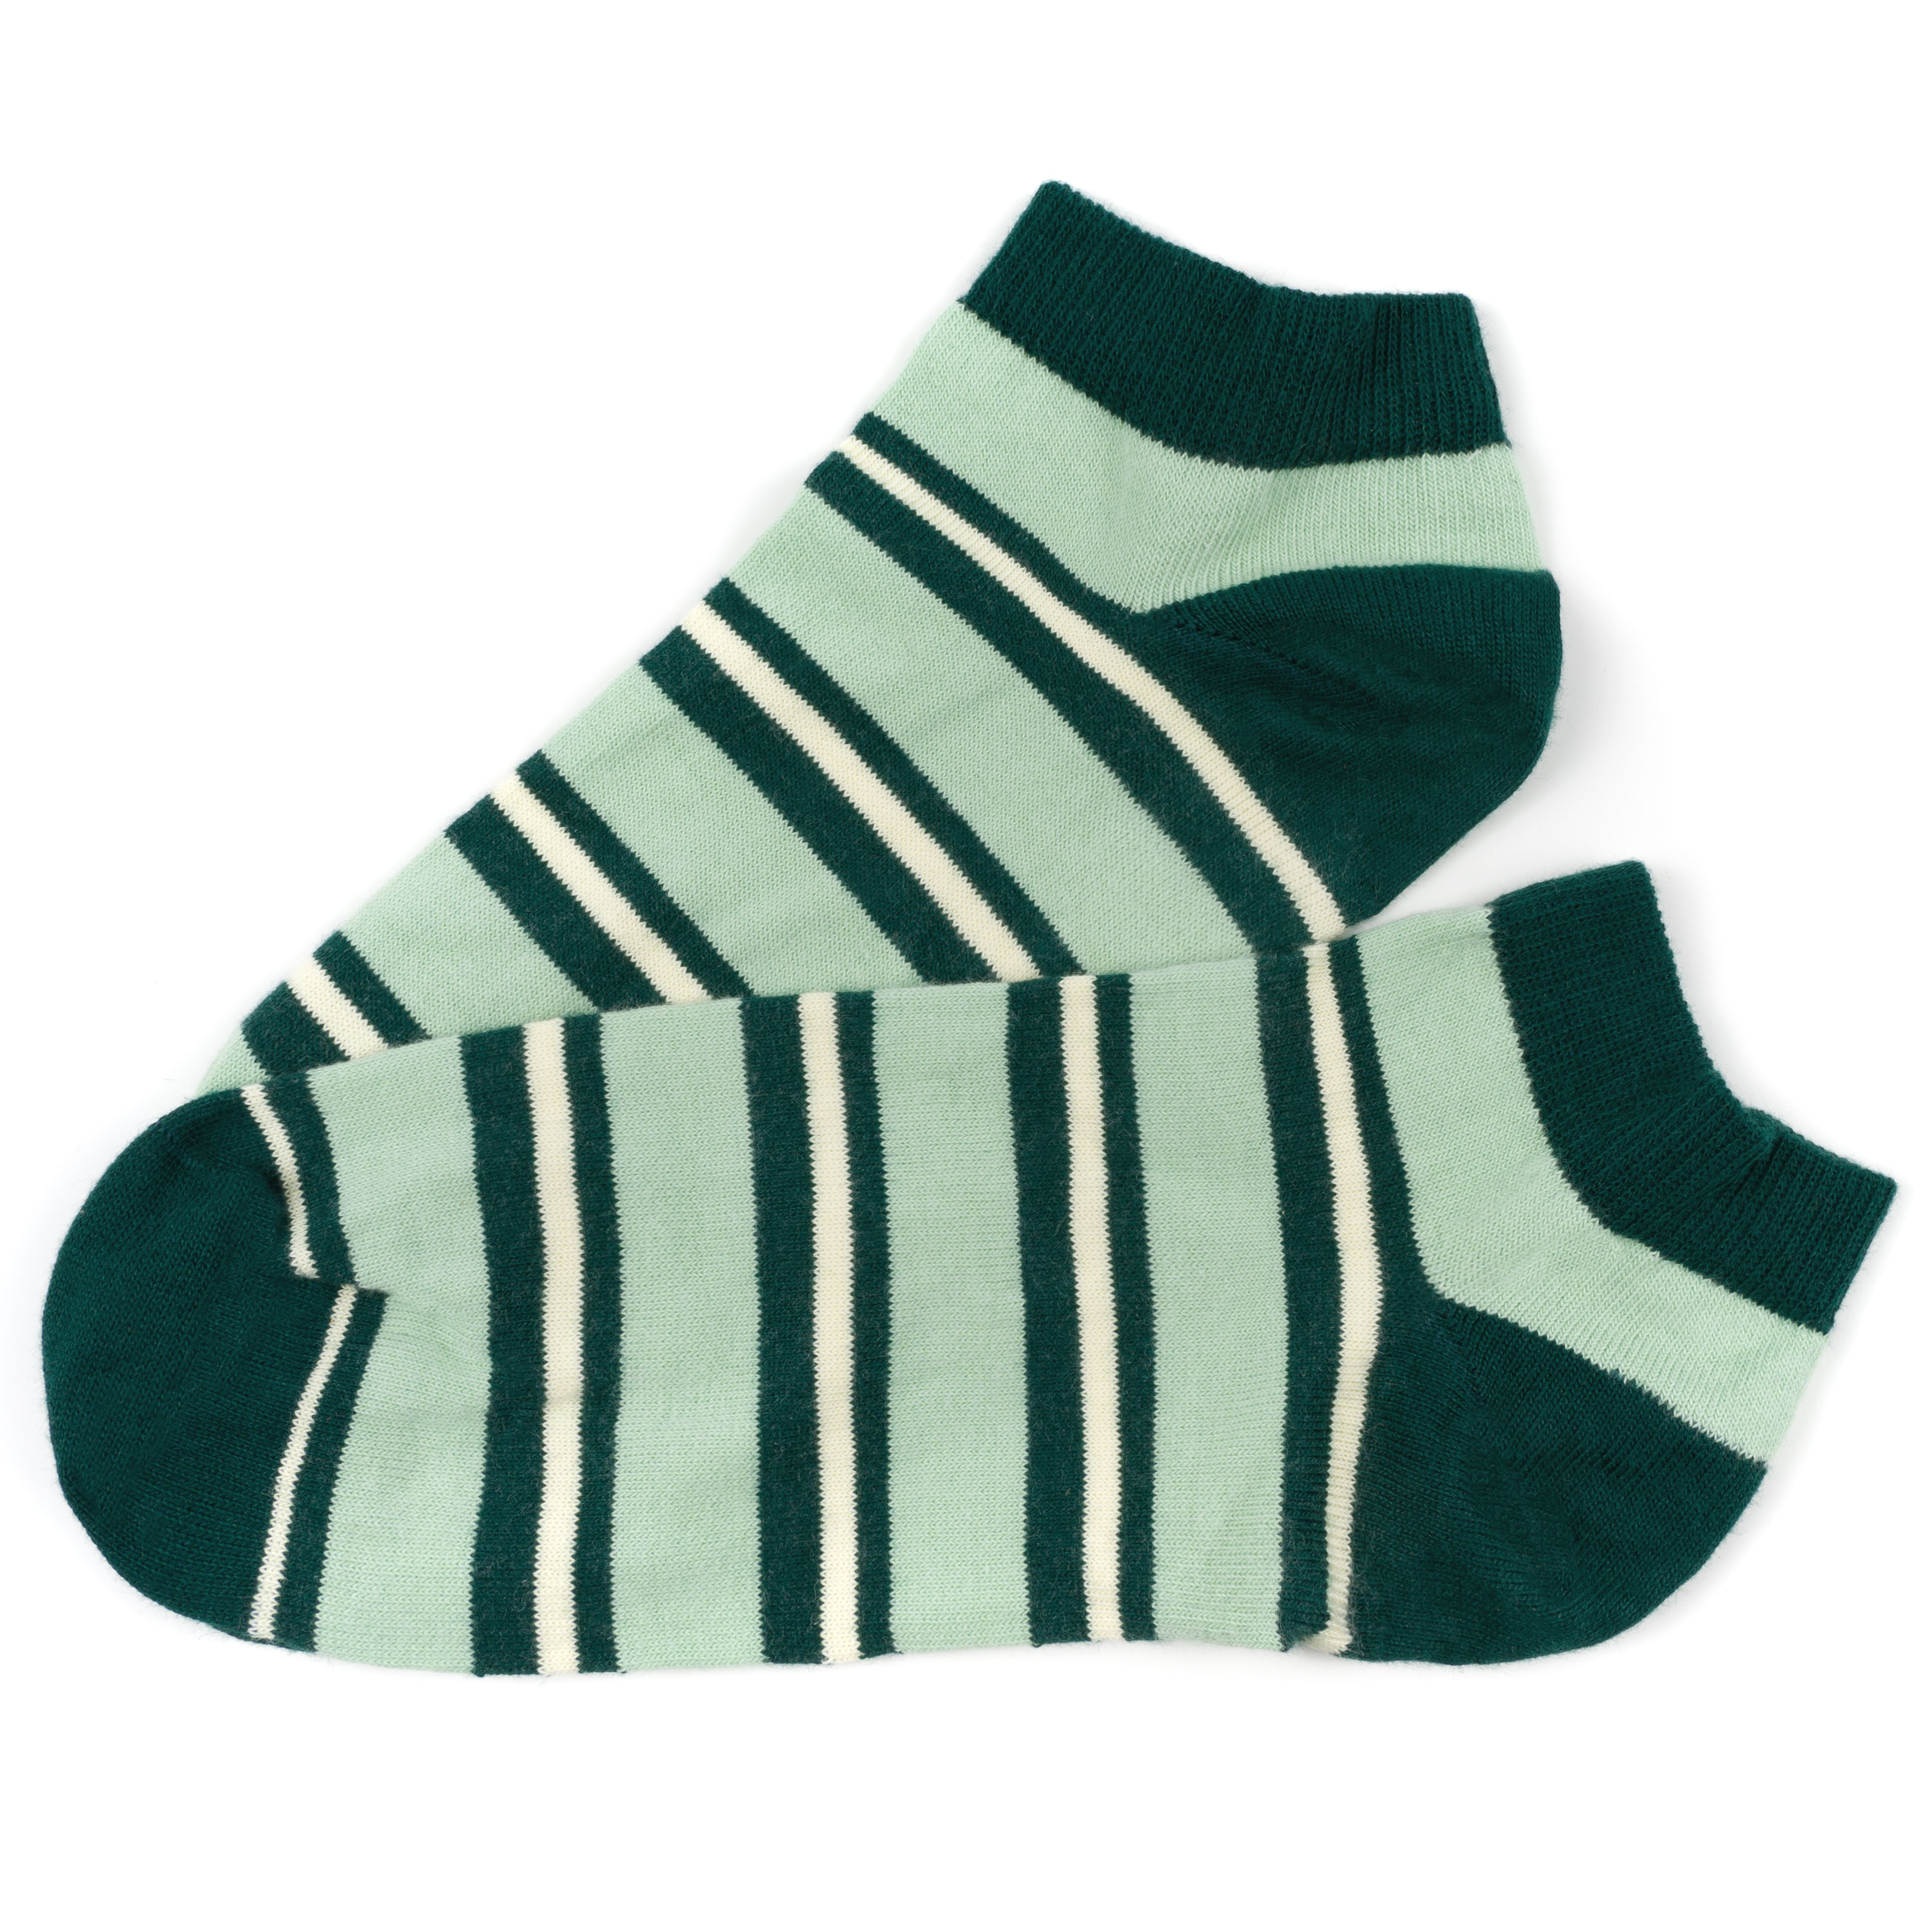 Sneaker-Socken Blockstripe grün